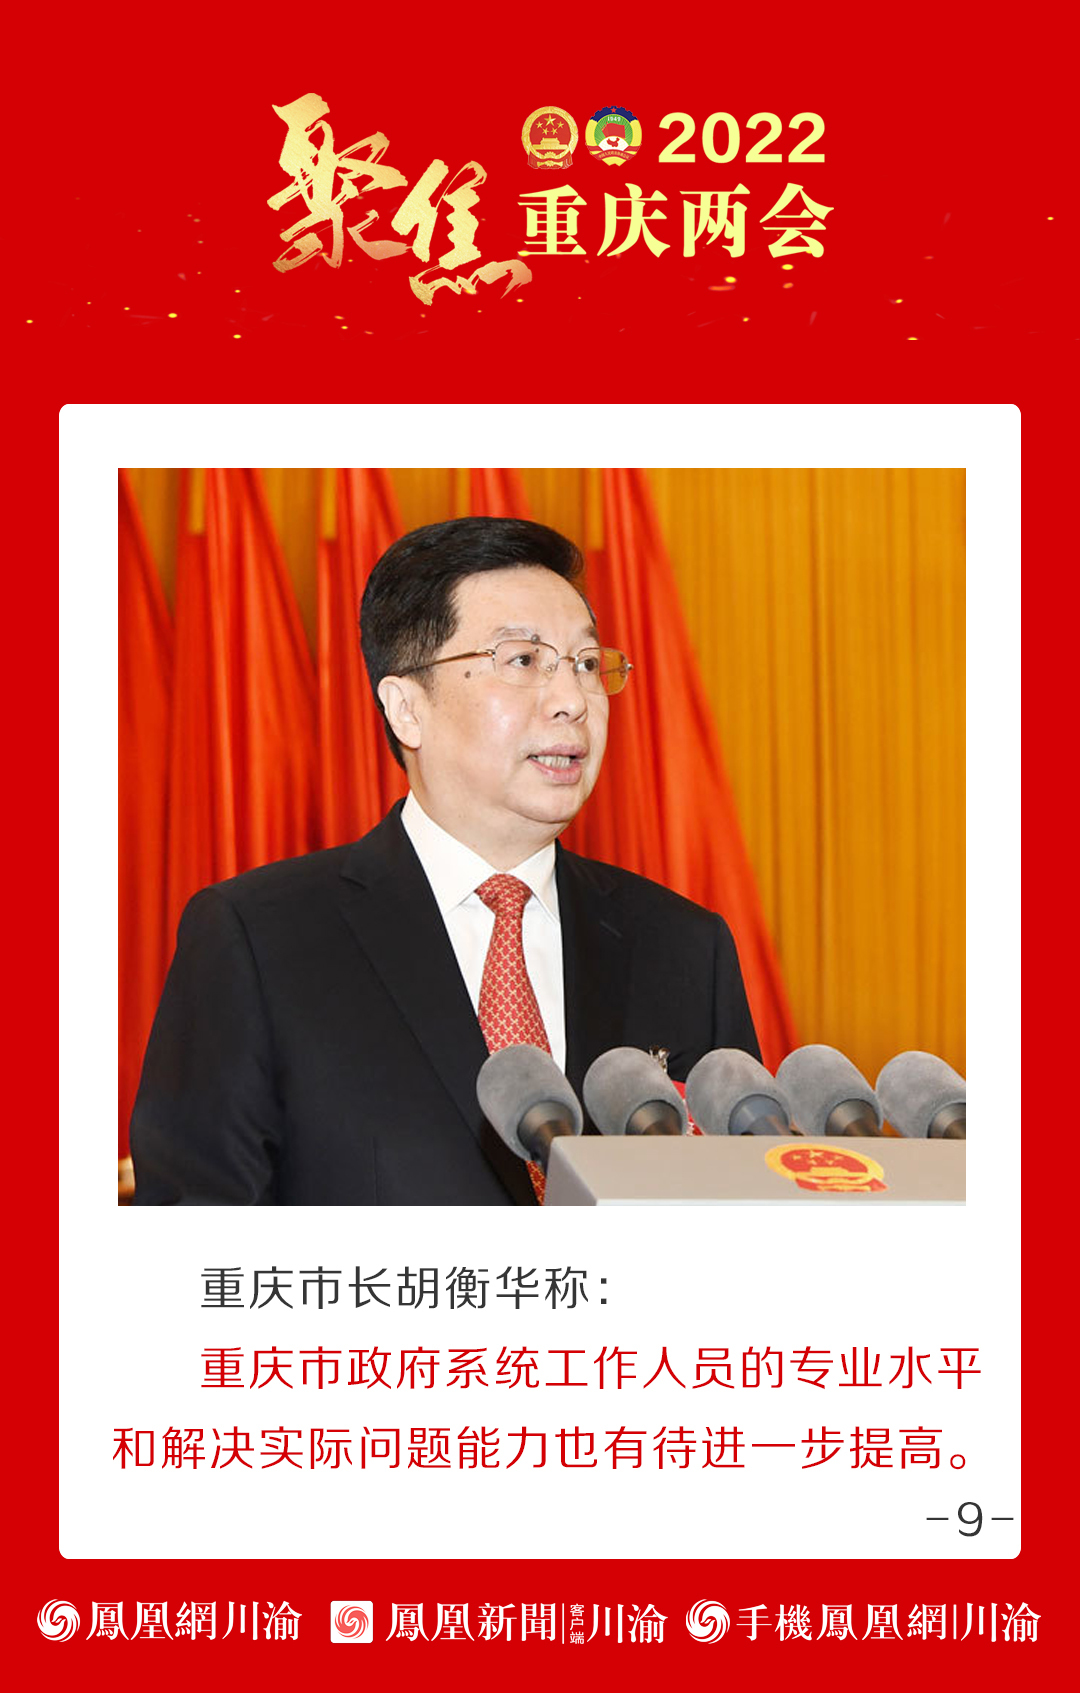 重庆市长胡衡华:重庆经济社会发展面临九大问题